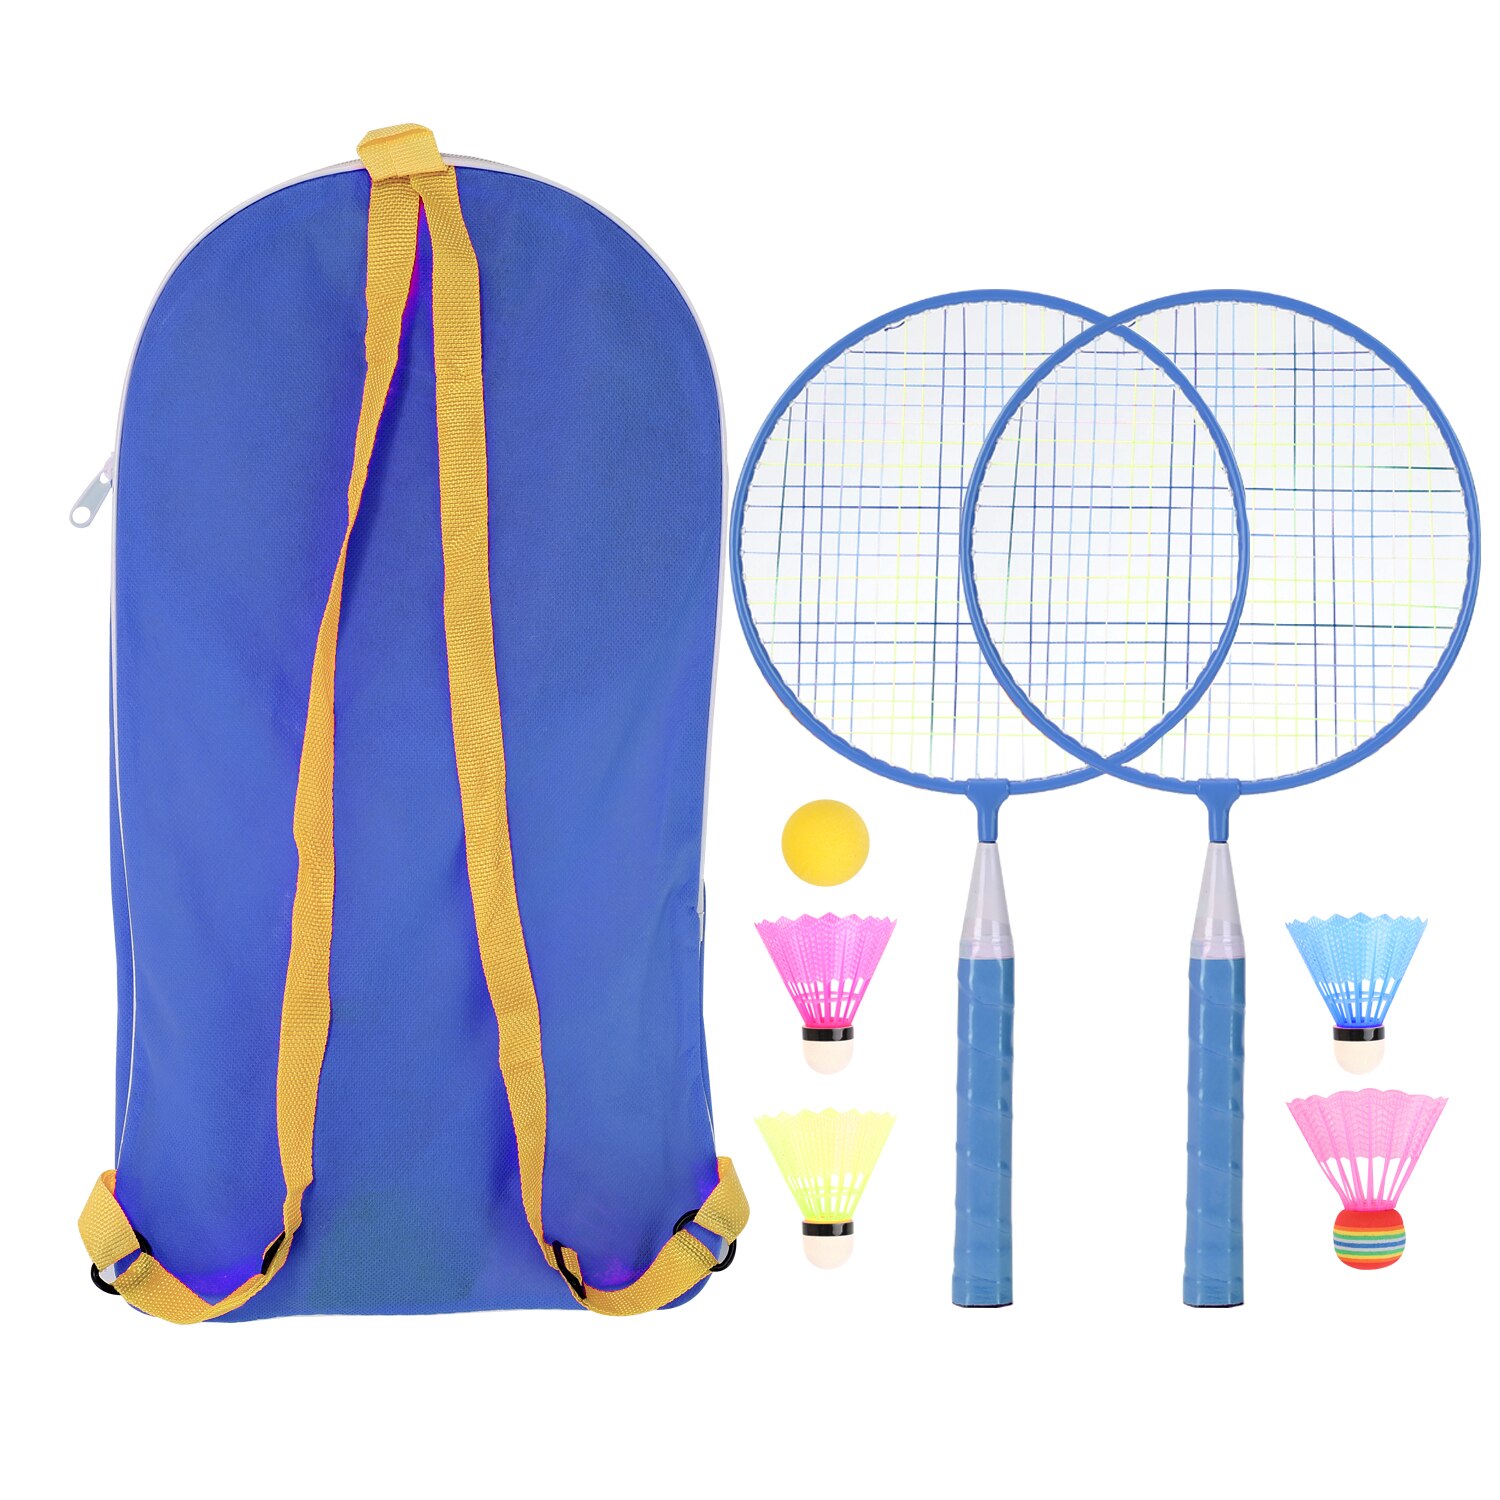 1 Set Professionele Badminton Rackets Kids Badminton Training Tool Buitensporten Spelen Toy Set Met Vier Ballen